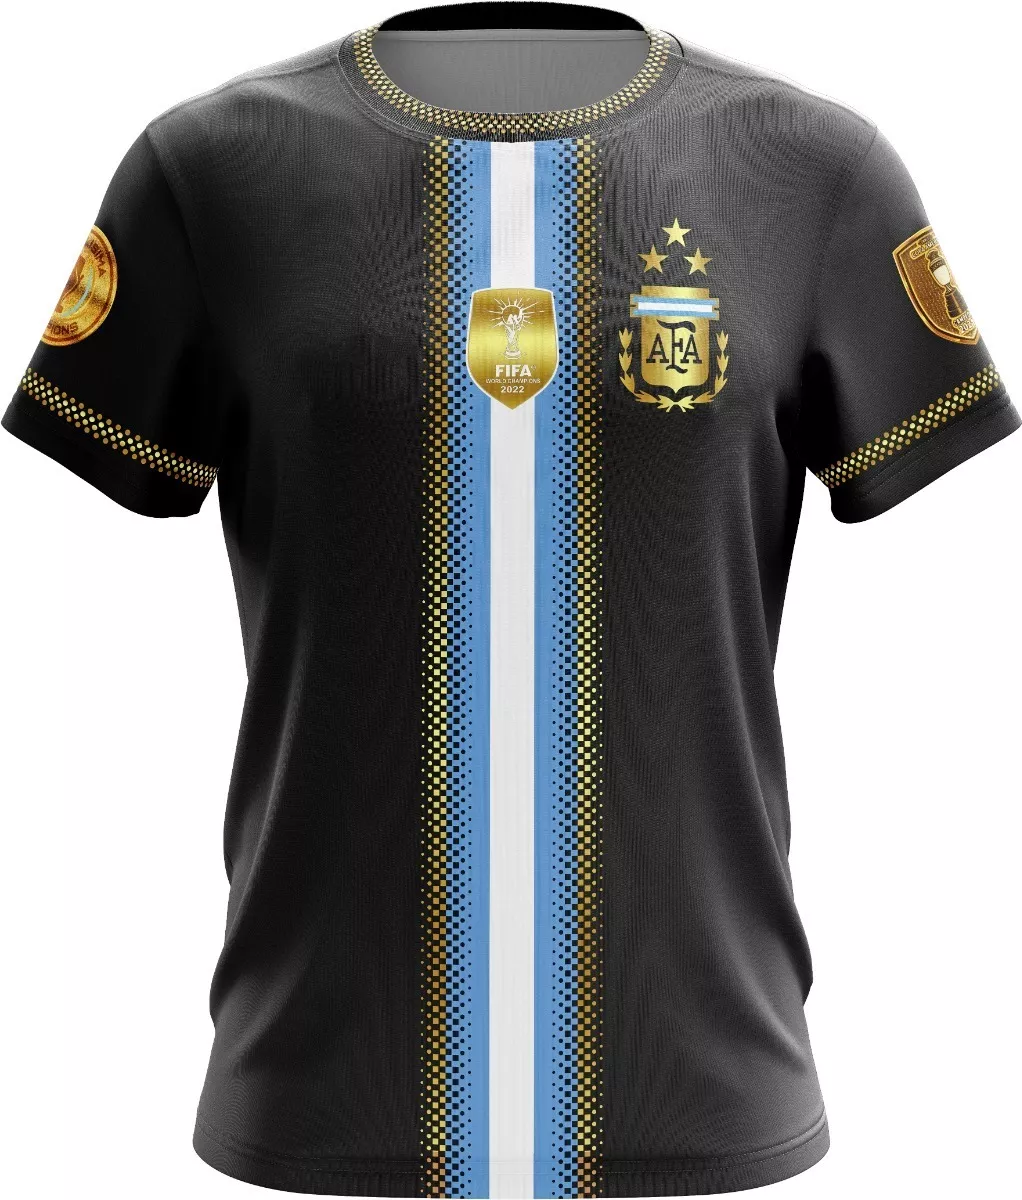 Camiseta Argentina Afa Campeones Edicion Negra Dorada